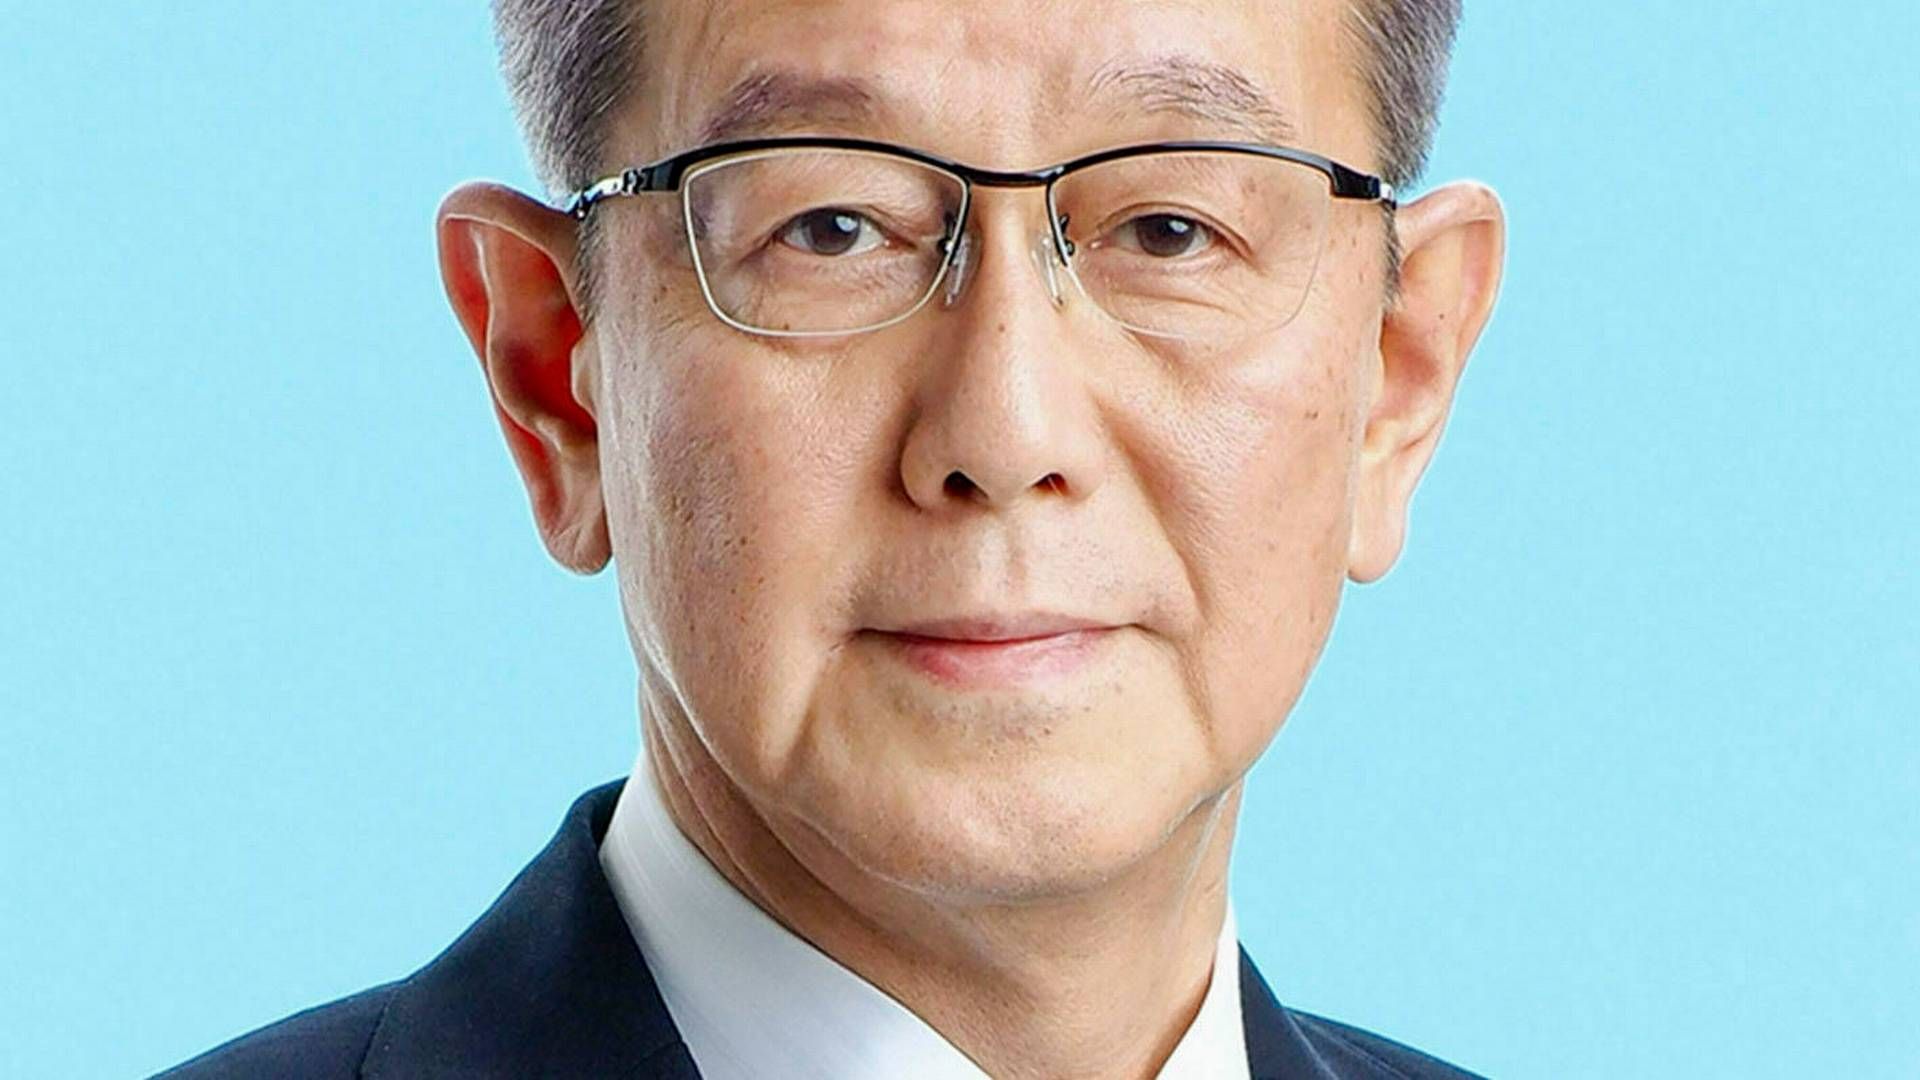 Yasuo Takeuchi har arbejdet sig op gennem Olympus gennem 41 år og 10 mdr. og er i dag topchef for den japanske endoskopigigant.